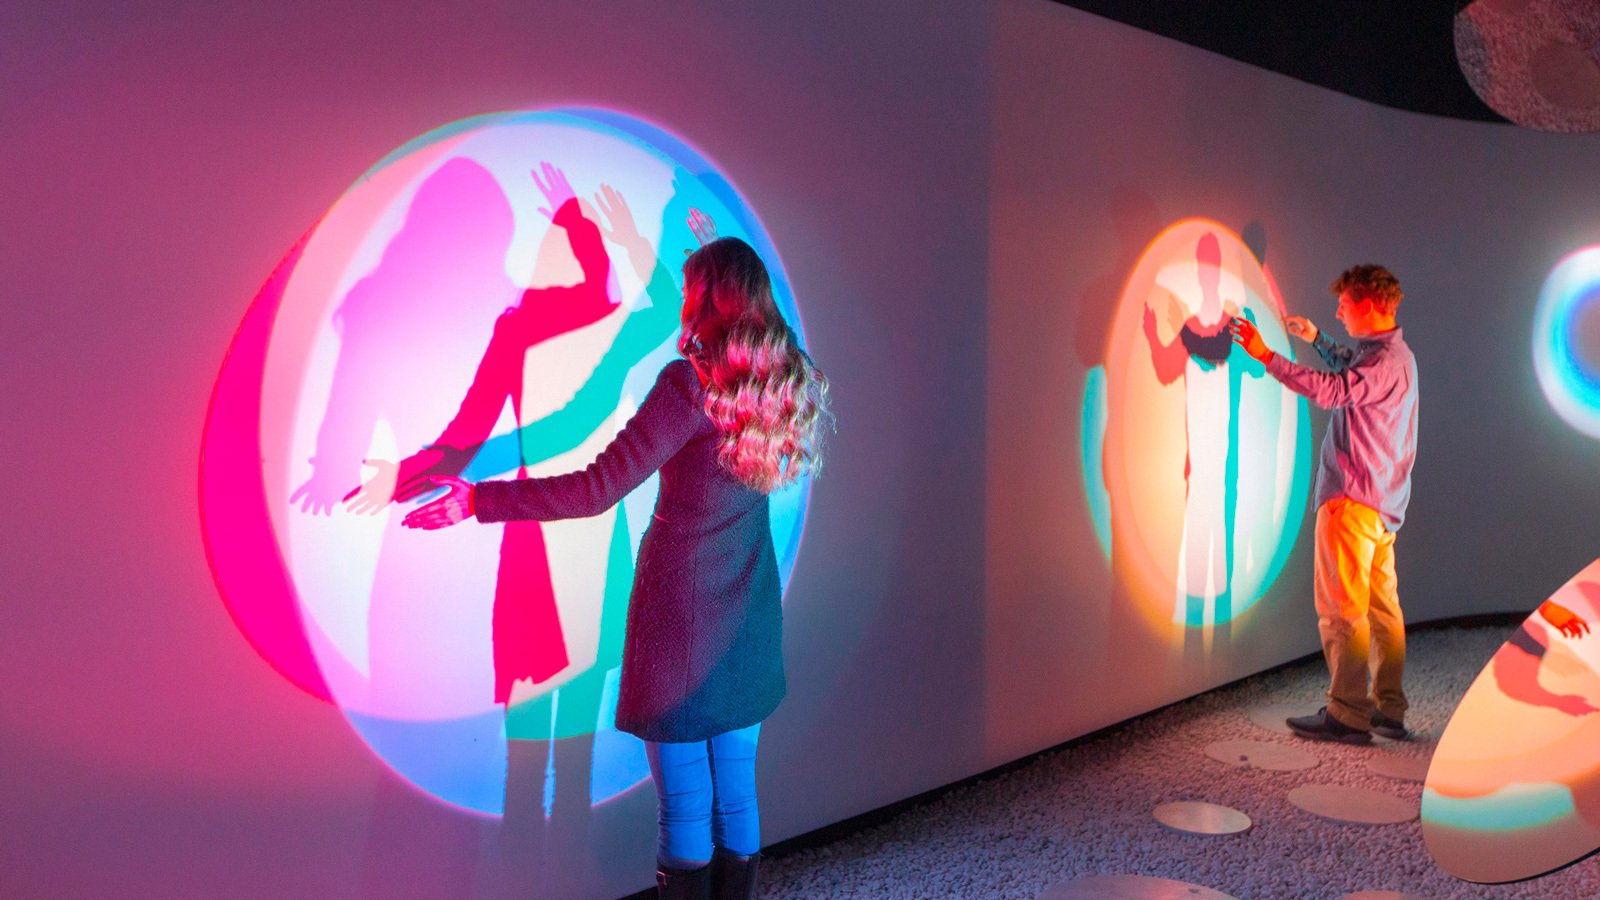 Интерактивная инсталляция, созданная компанией Samsung для Миланской недели дизайна. 2019.